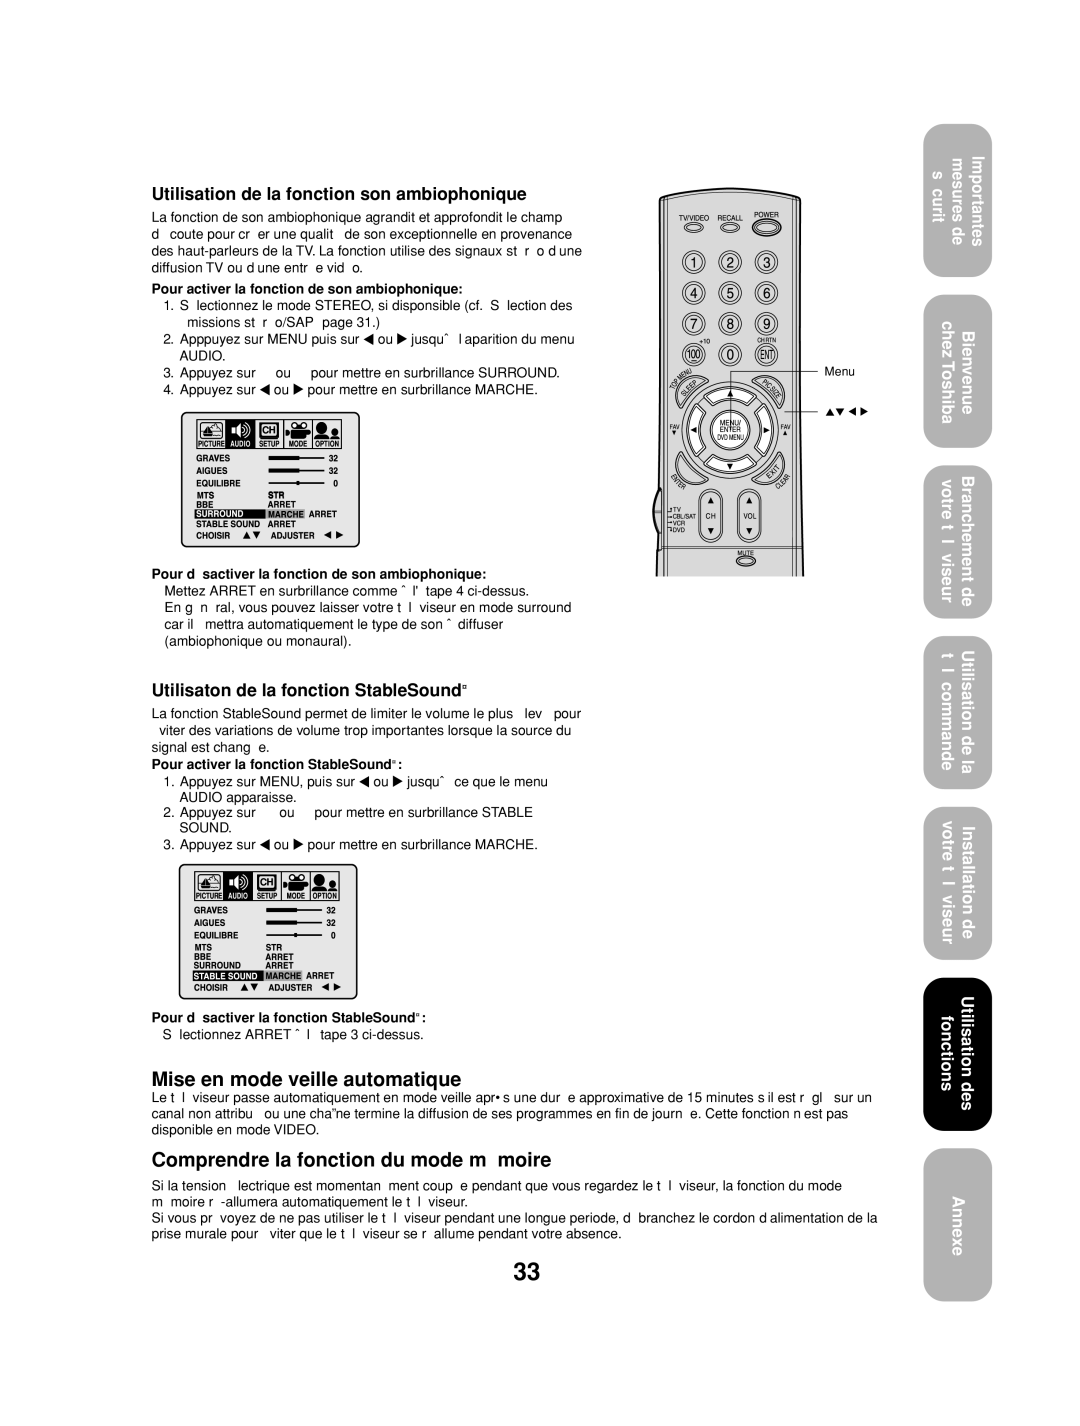 Toshiba 27AF53 appendix Mise en mode veille automatique, Comprendre la fonction du mode mémoire 